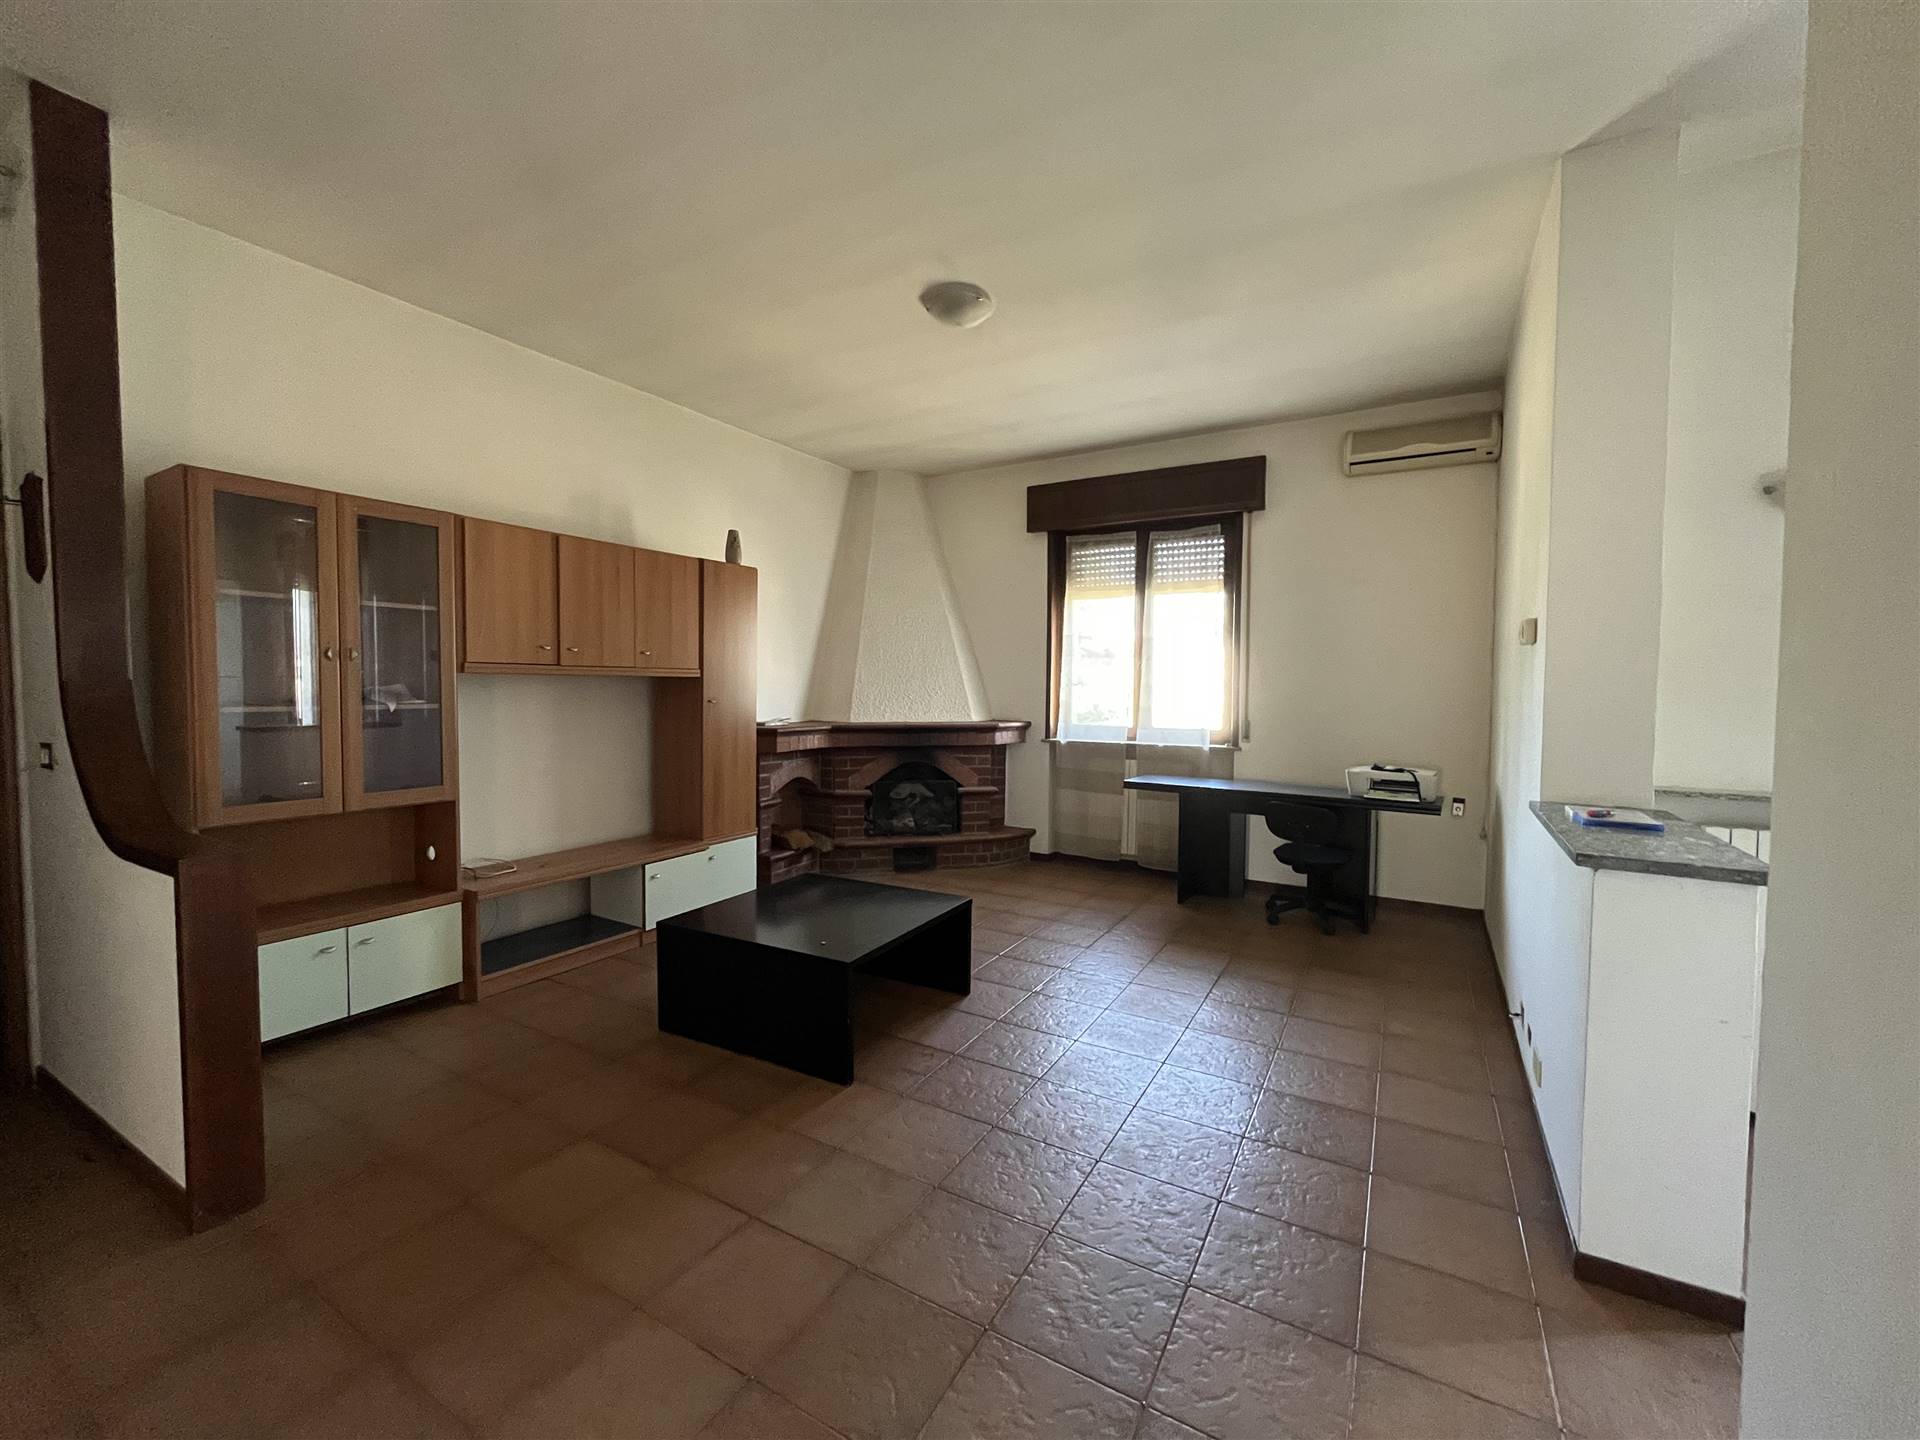 Appartamento in vendita a San Giorgio Piacentino, 3 locali, zona Località: SAN GIORGIO, prezzo € 85.000 | CambioCasa.it